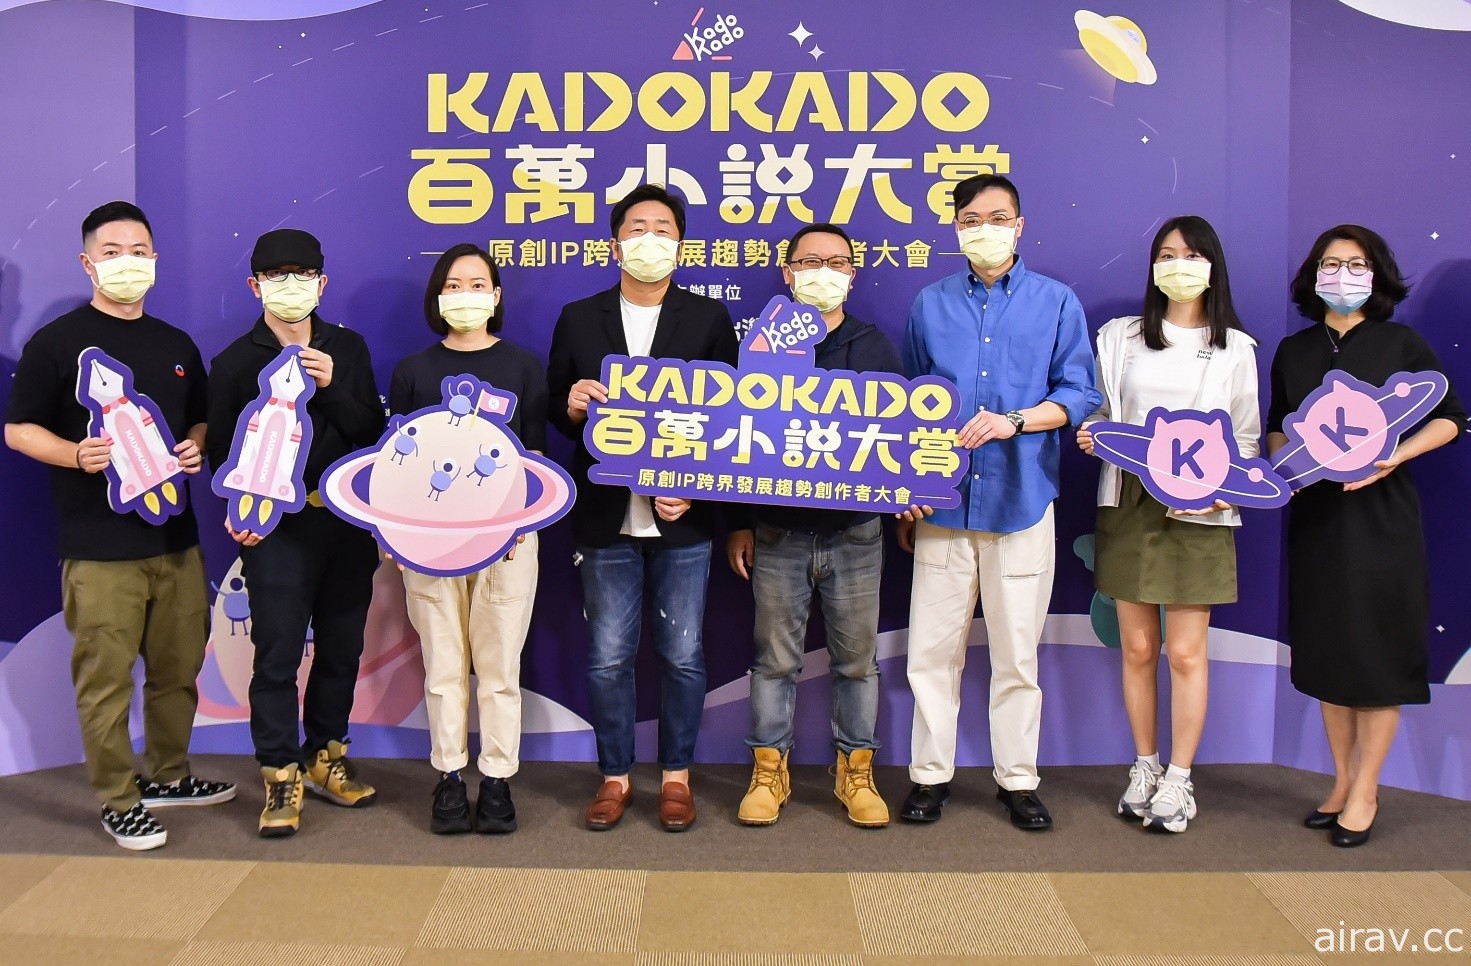 KadoKado 百萬小說創作大賞 6 月起活動正式展開